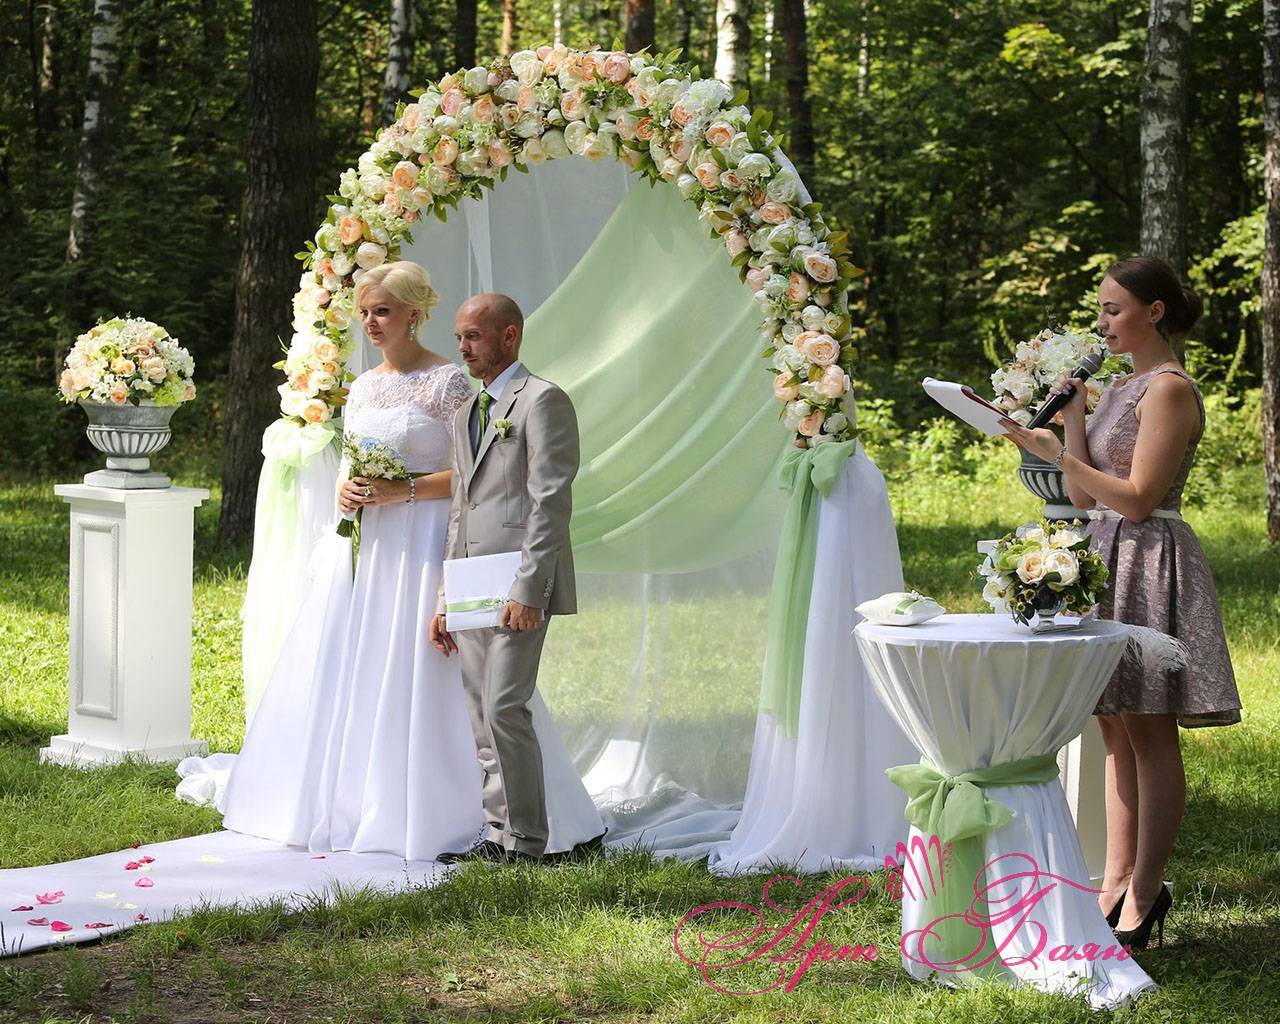 Свадьба в усадьбе: 5 идеальных исторических мест для выездной регистрации брака